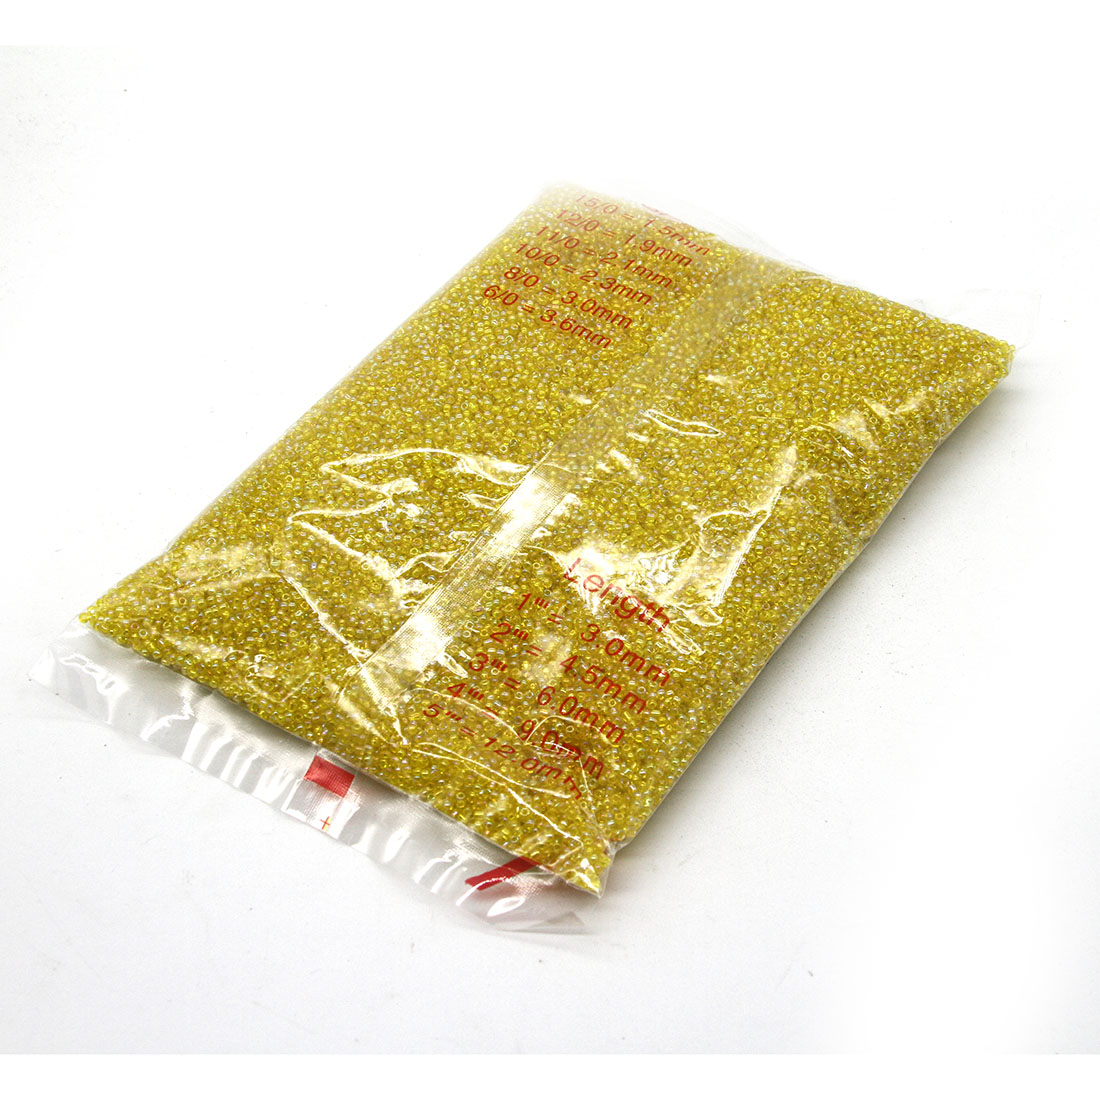 Yellow 3mm 10,000 packs